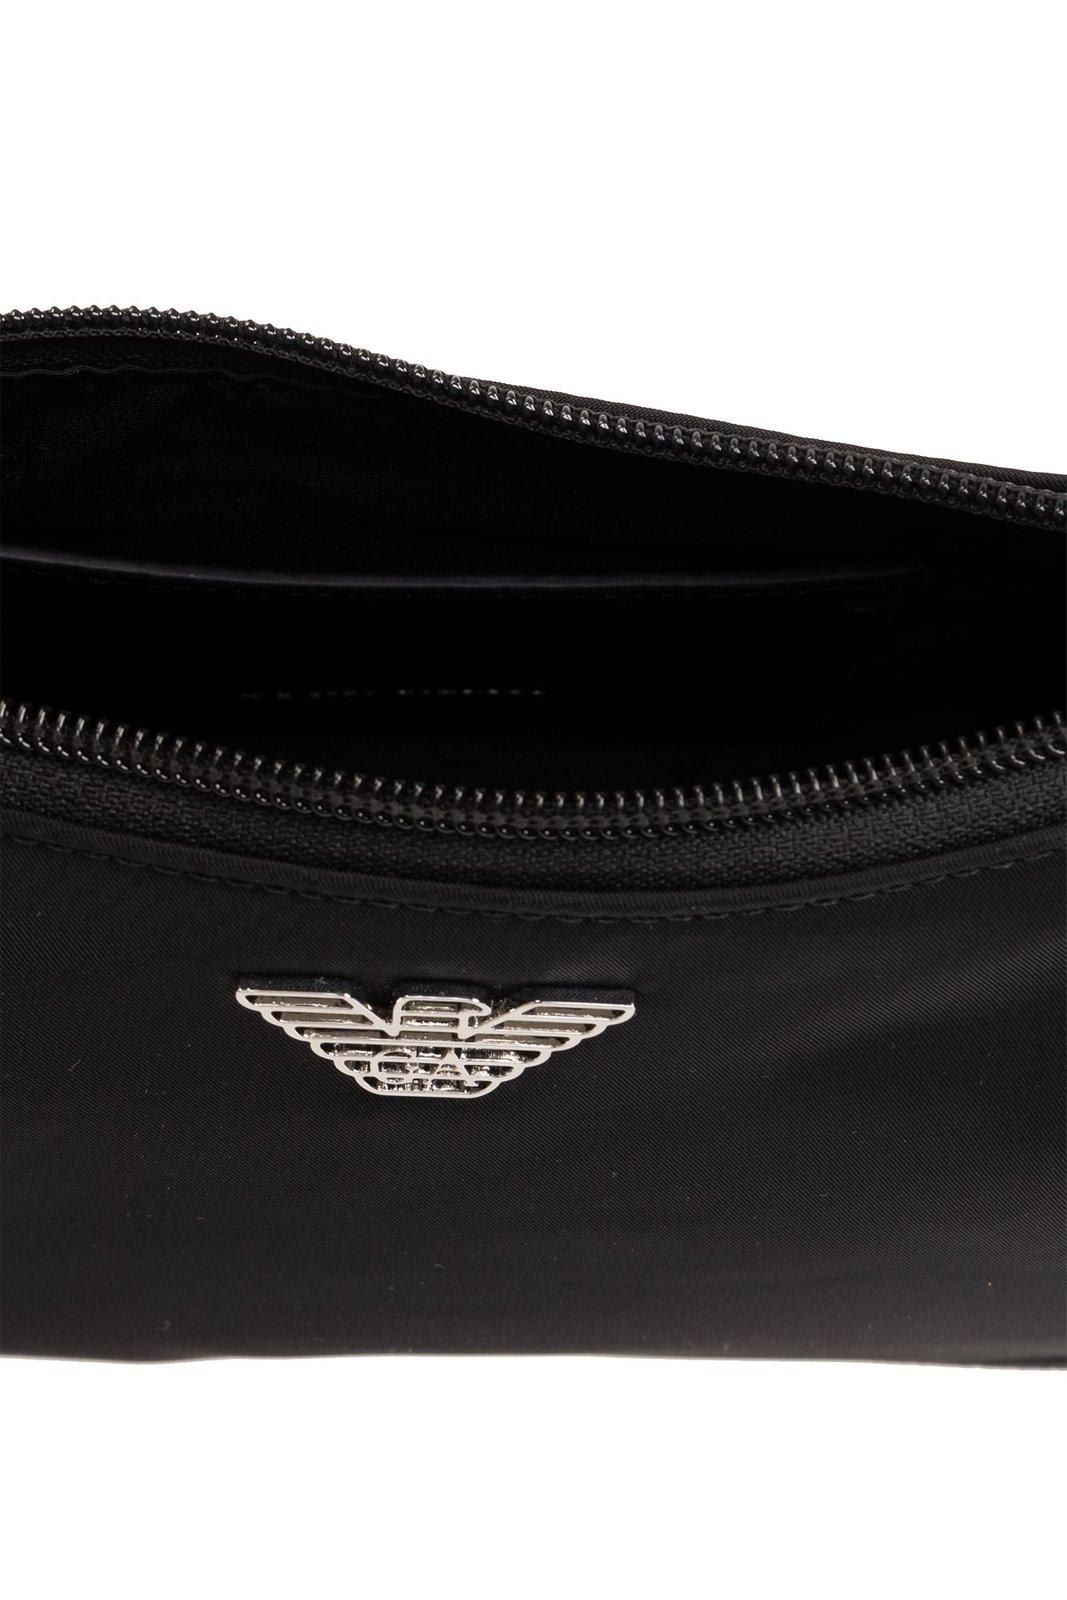 Shop Emporio Armani Sustainable Collection Shoulder Bag In Black